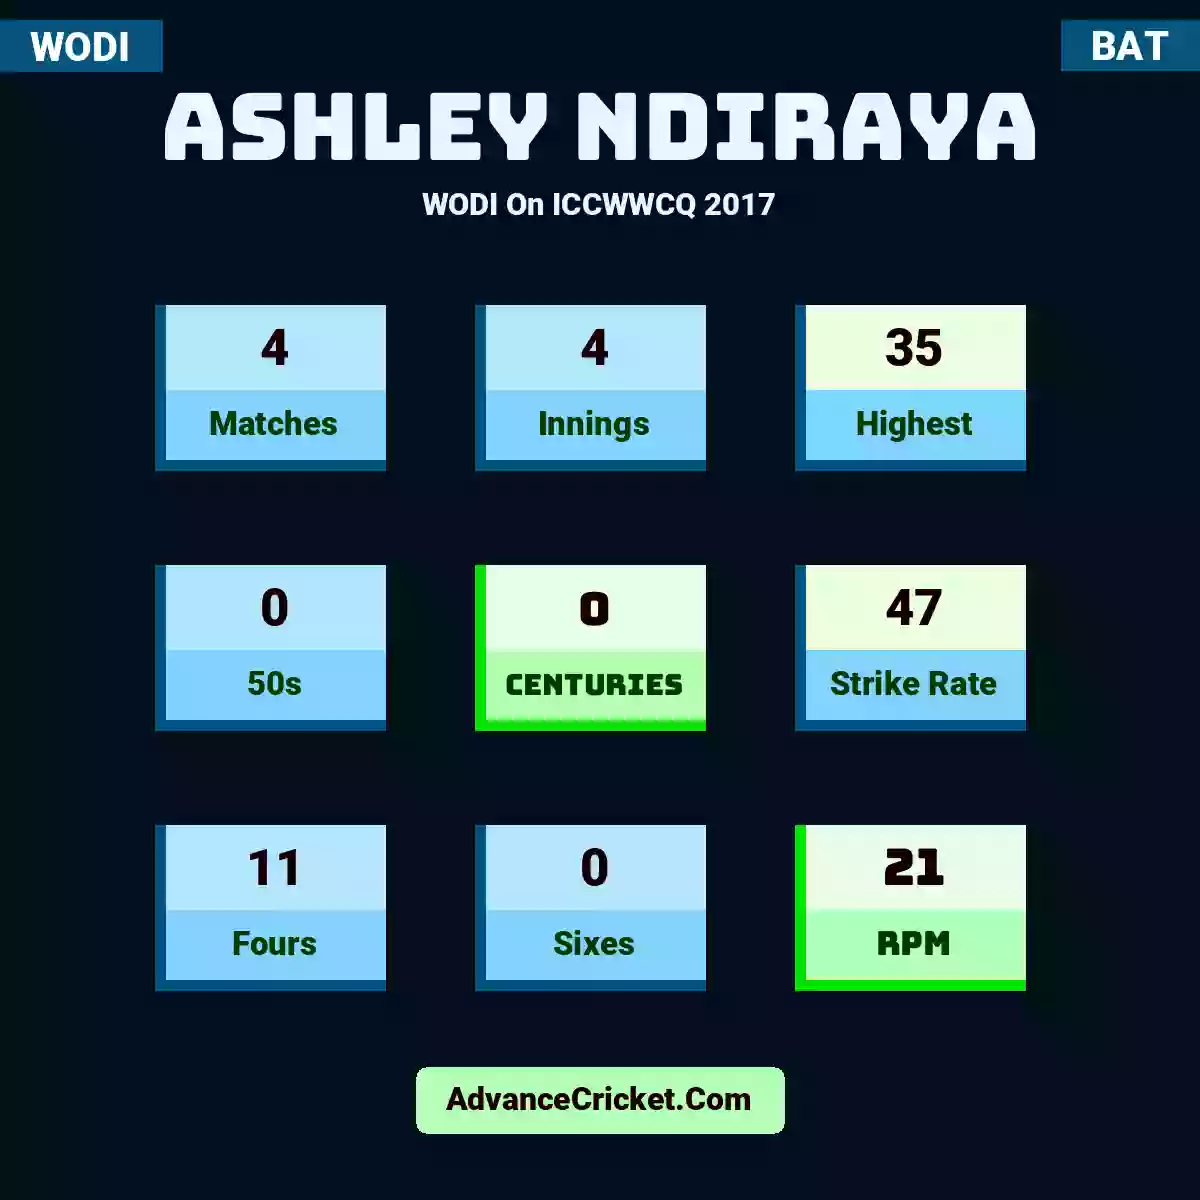 Ashley Ndiraya WODI  On ICCWWCQ 2017, Ashley Ndiraya played 4 matches, scored 35 runs as highest, 0 half-centuries, and 0 centuries, with a strike rate of 47. A.Ndiraya hit 11 fours and 0 sixes, with an RPM of 21.